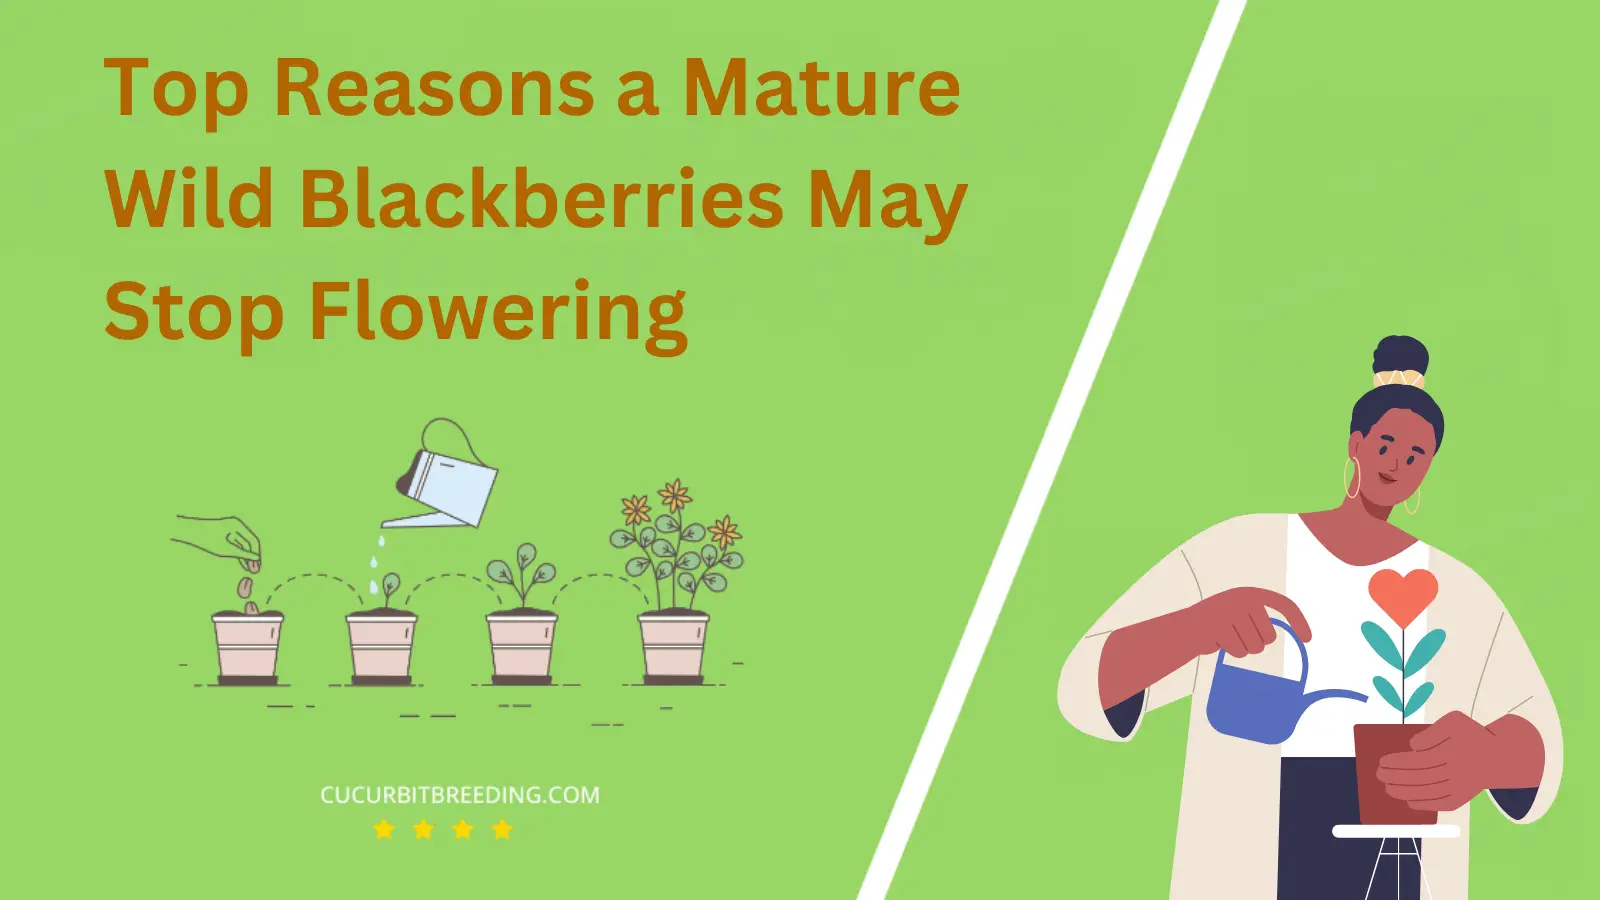 Top Reasons a Mature Wild Blackberries May Stop Flowering